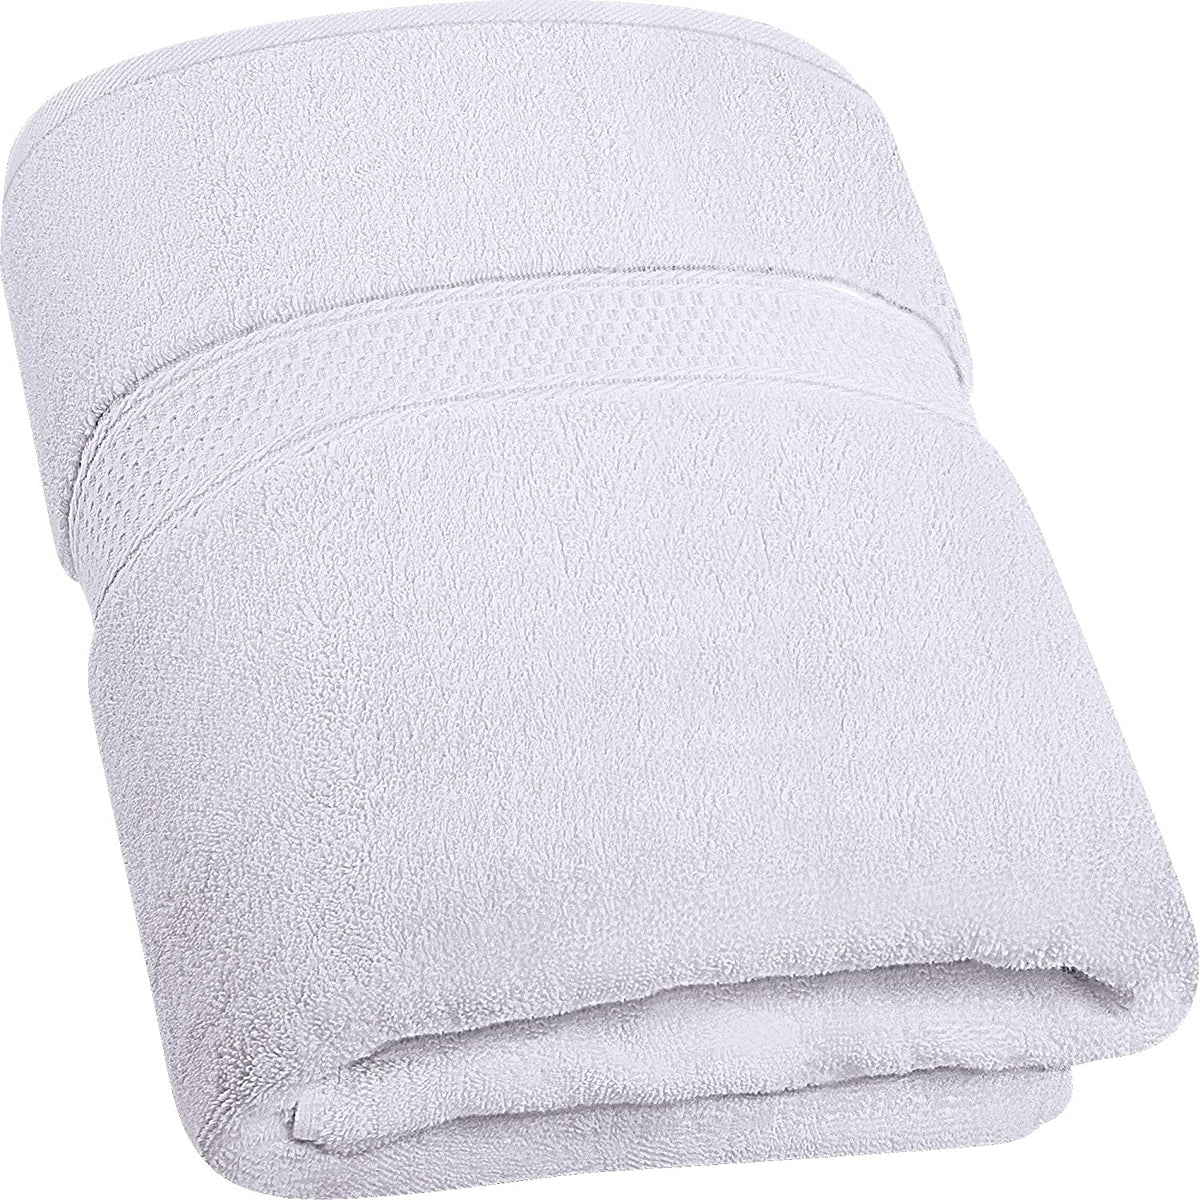 Cotton (1-Pcs) Bath Size Towels